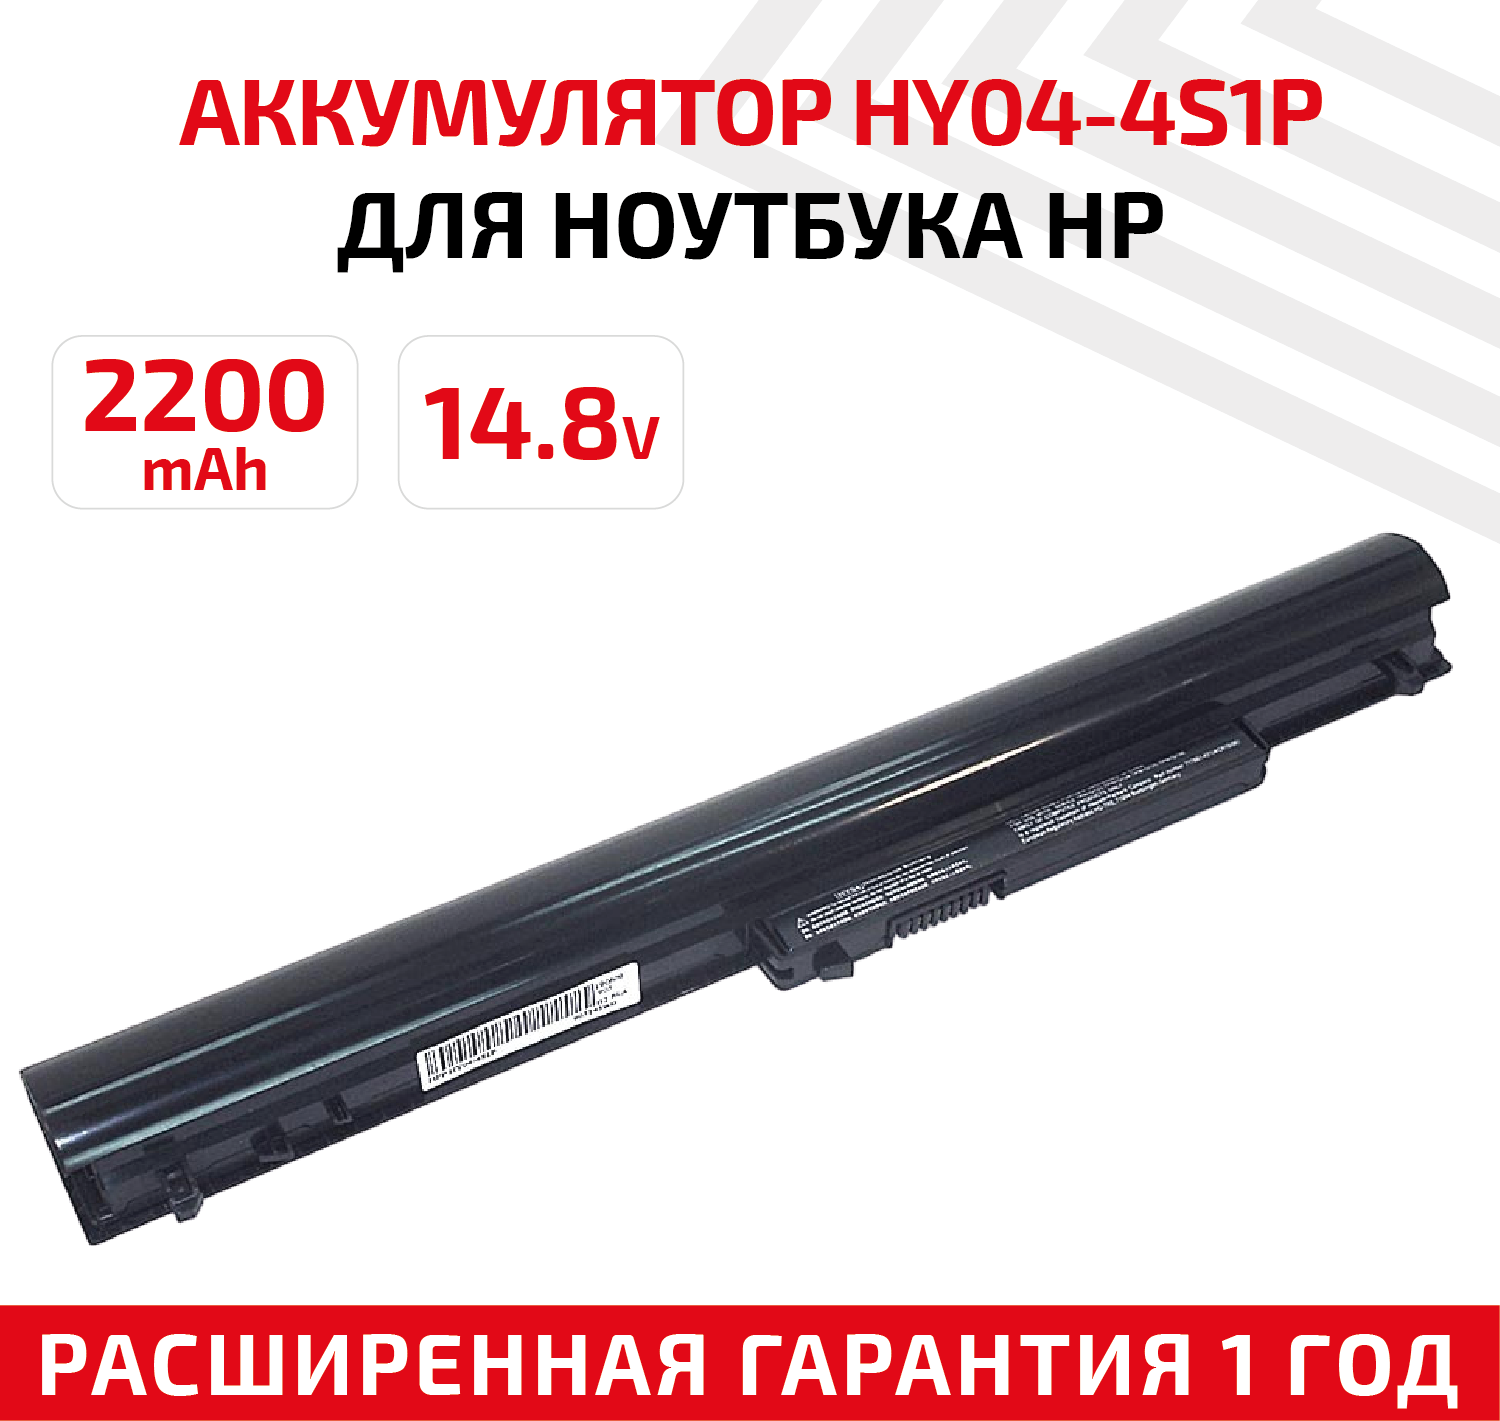 Аккумулятор (АКБ, аккумуляторная батарея) HY04-4S1P для ноутбука HP SleekBook 14, 14.8В, 2200мАч, черный